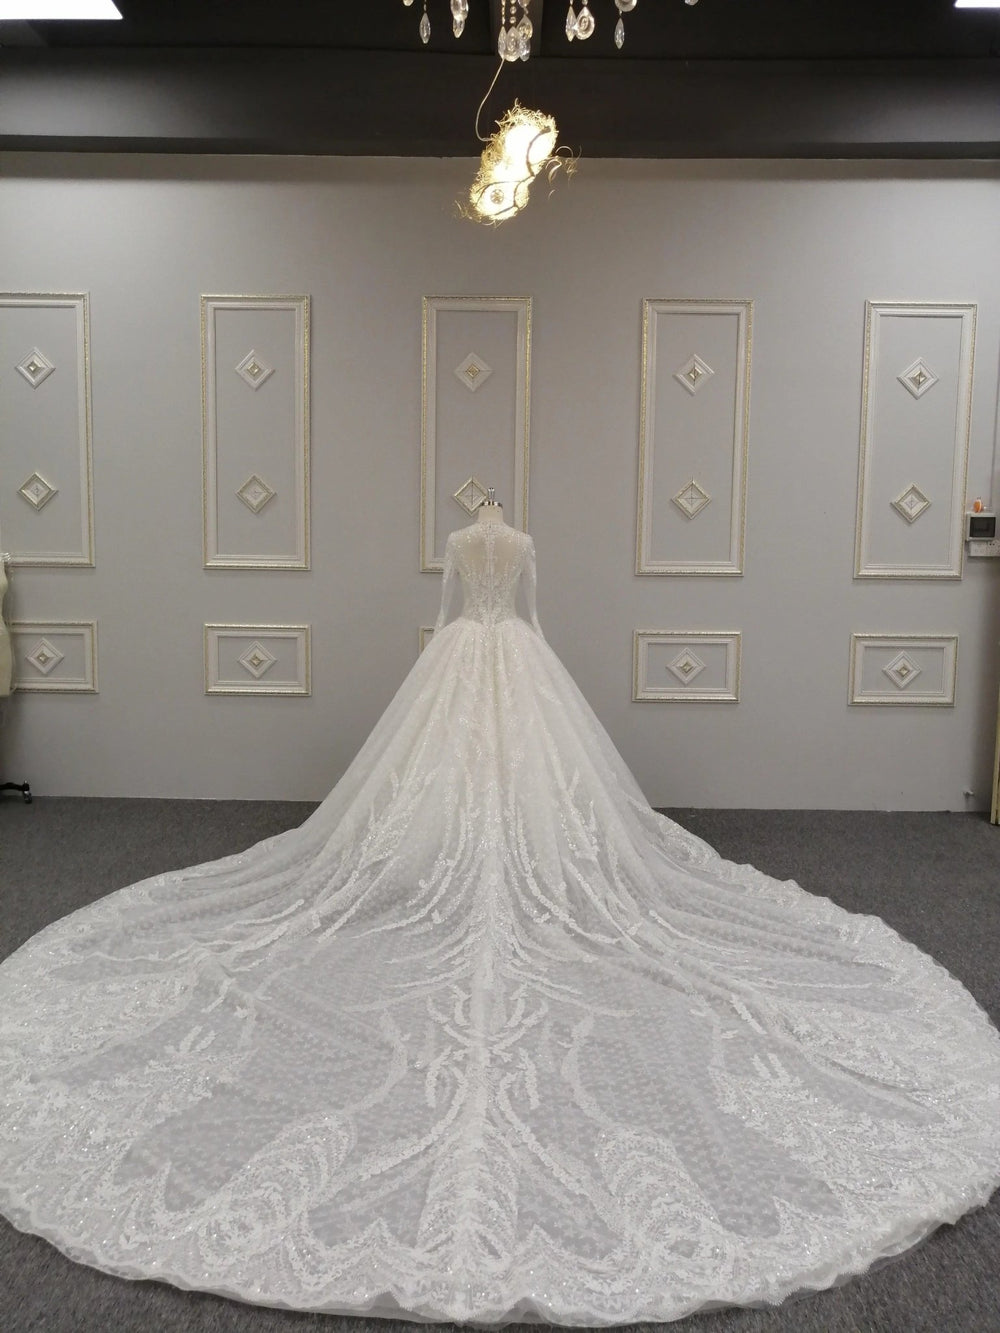 Kristallschweres, hochwertiges Hochzeitskleid